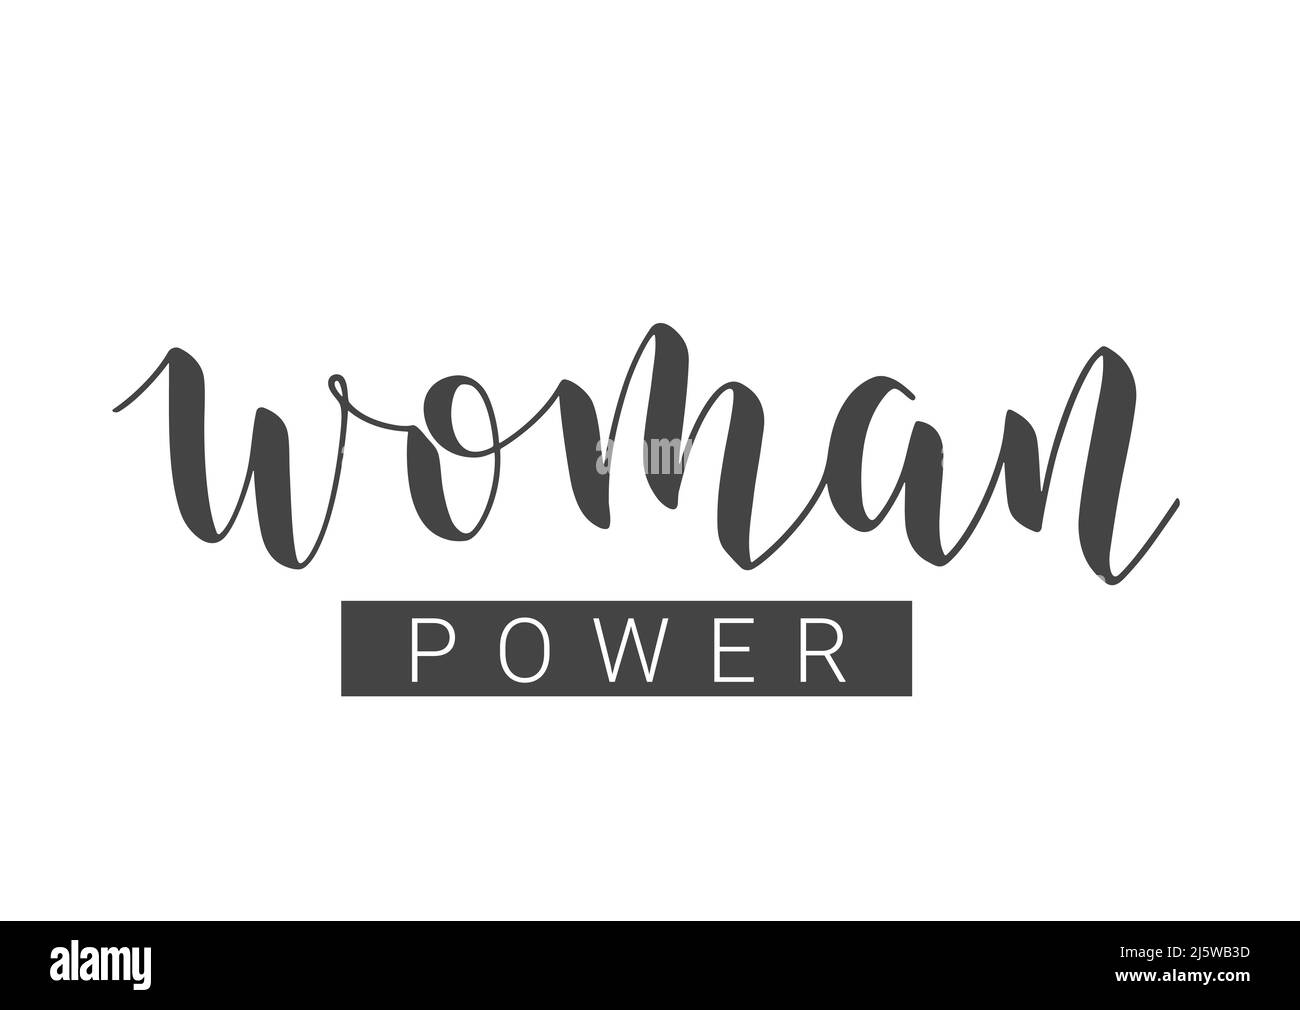 Vektorgrafik. Handgeschriebener Schriftzug von Woman Power. Vorlage für Karte, Etikett, Postkarte, Poster, Aufkleber, Print- oder Web-Produkt. Stock Vektor